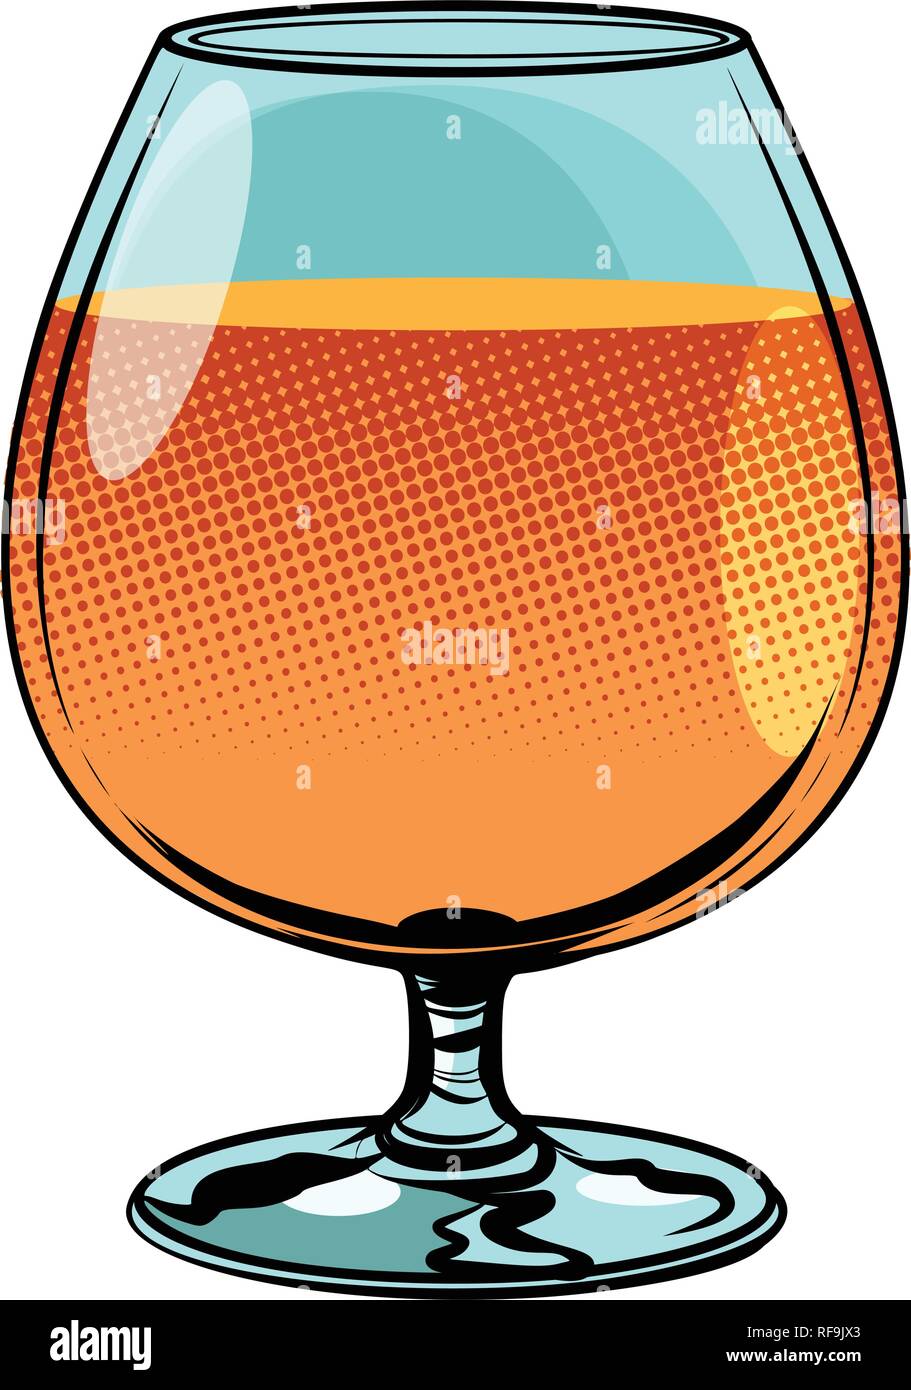 glass of cognac brandy Stock Vector